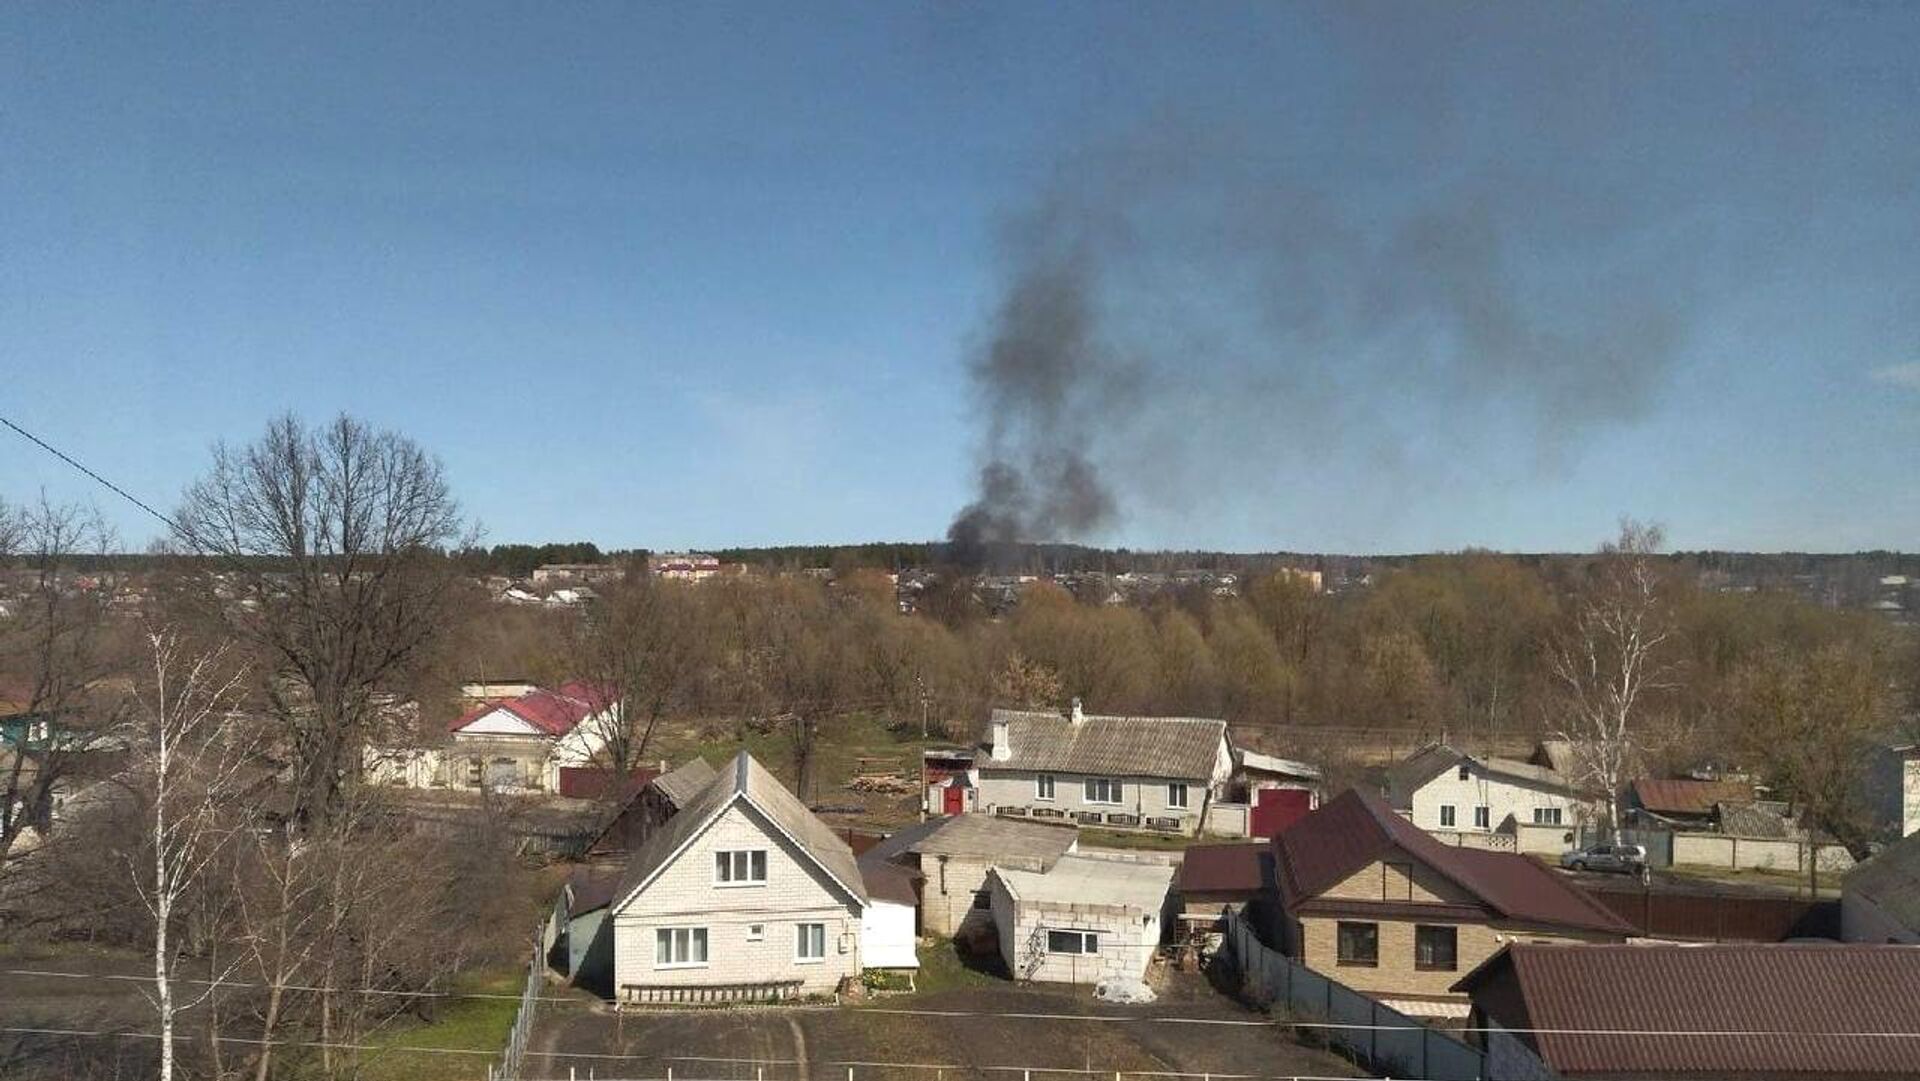 ВСУ обстреляли поселок Климово в Брянской области, 14 апреля 2022 года  - Sputnik Latvija, 1920, 16.04.2022